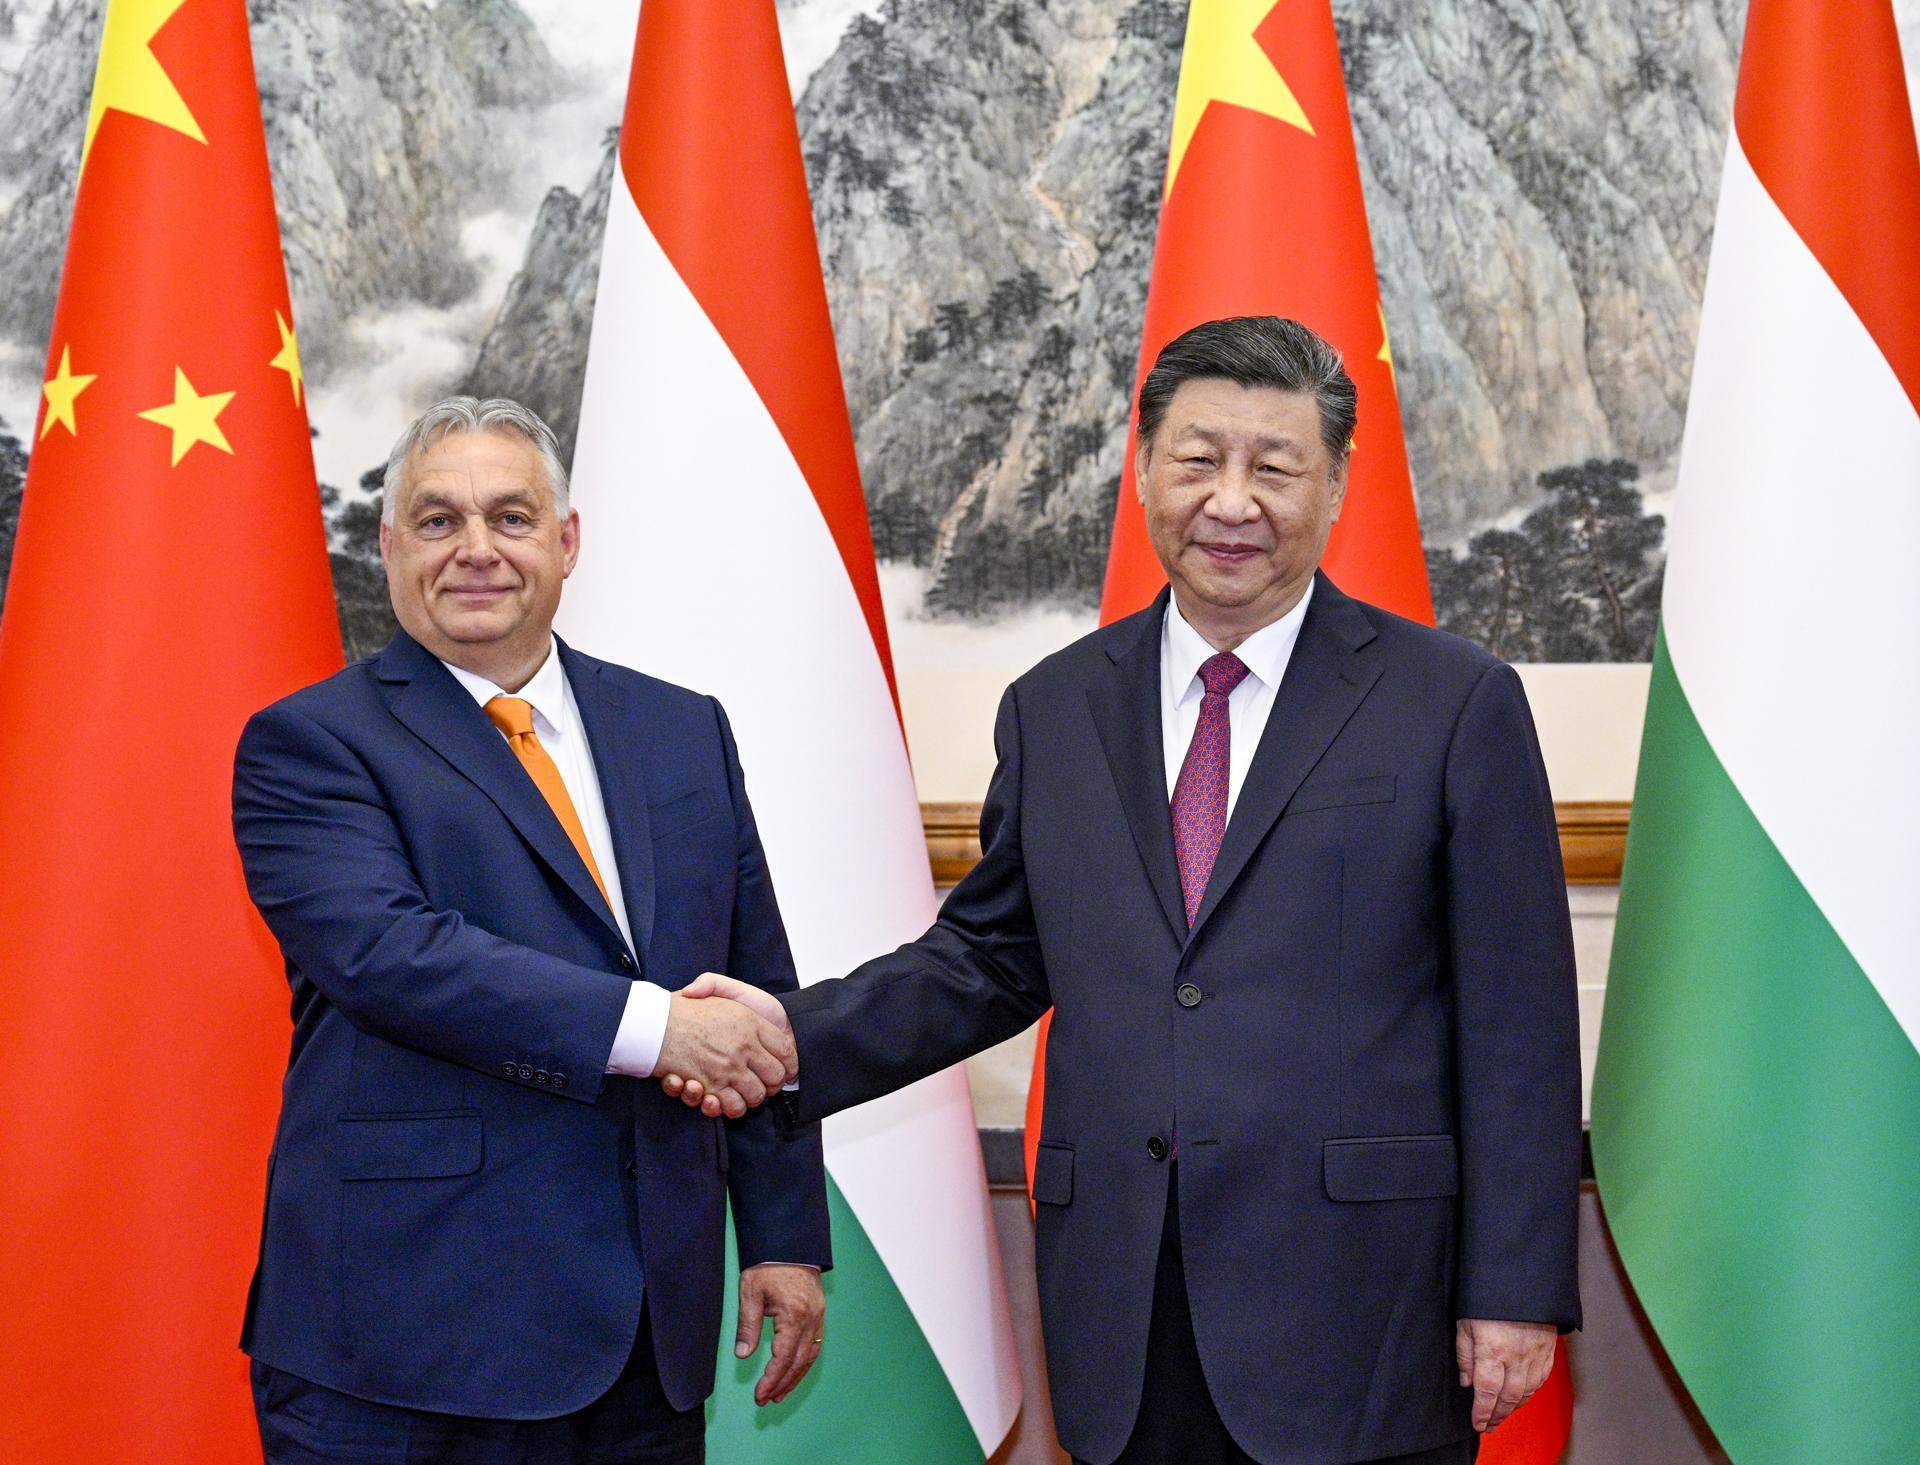 La visita sorpresa de Orbán a China, que califica de "misión de paz" por la guerra de Ucrania